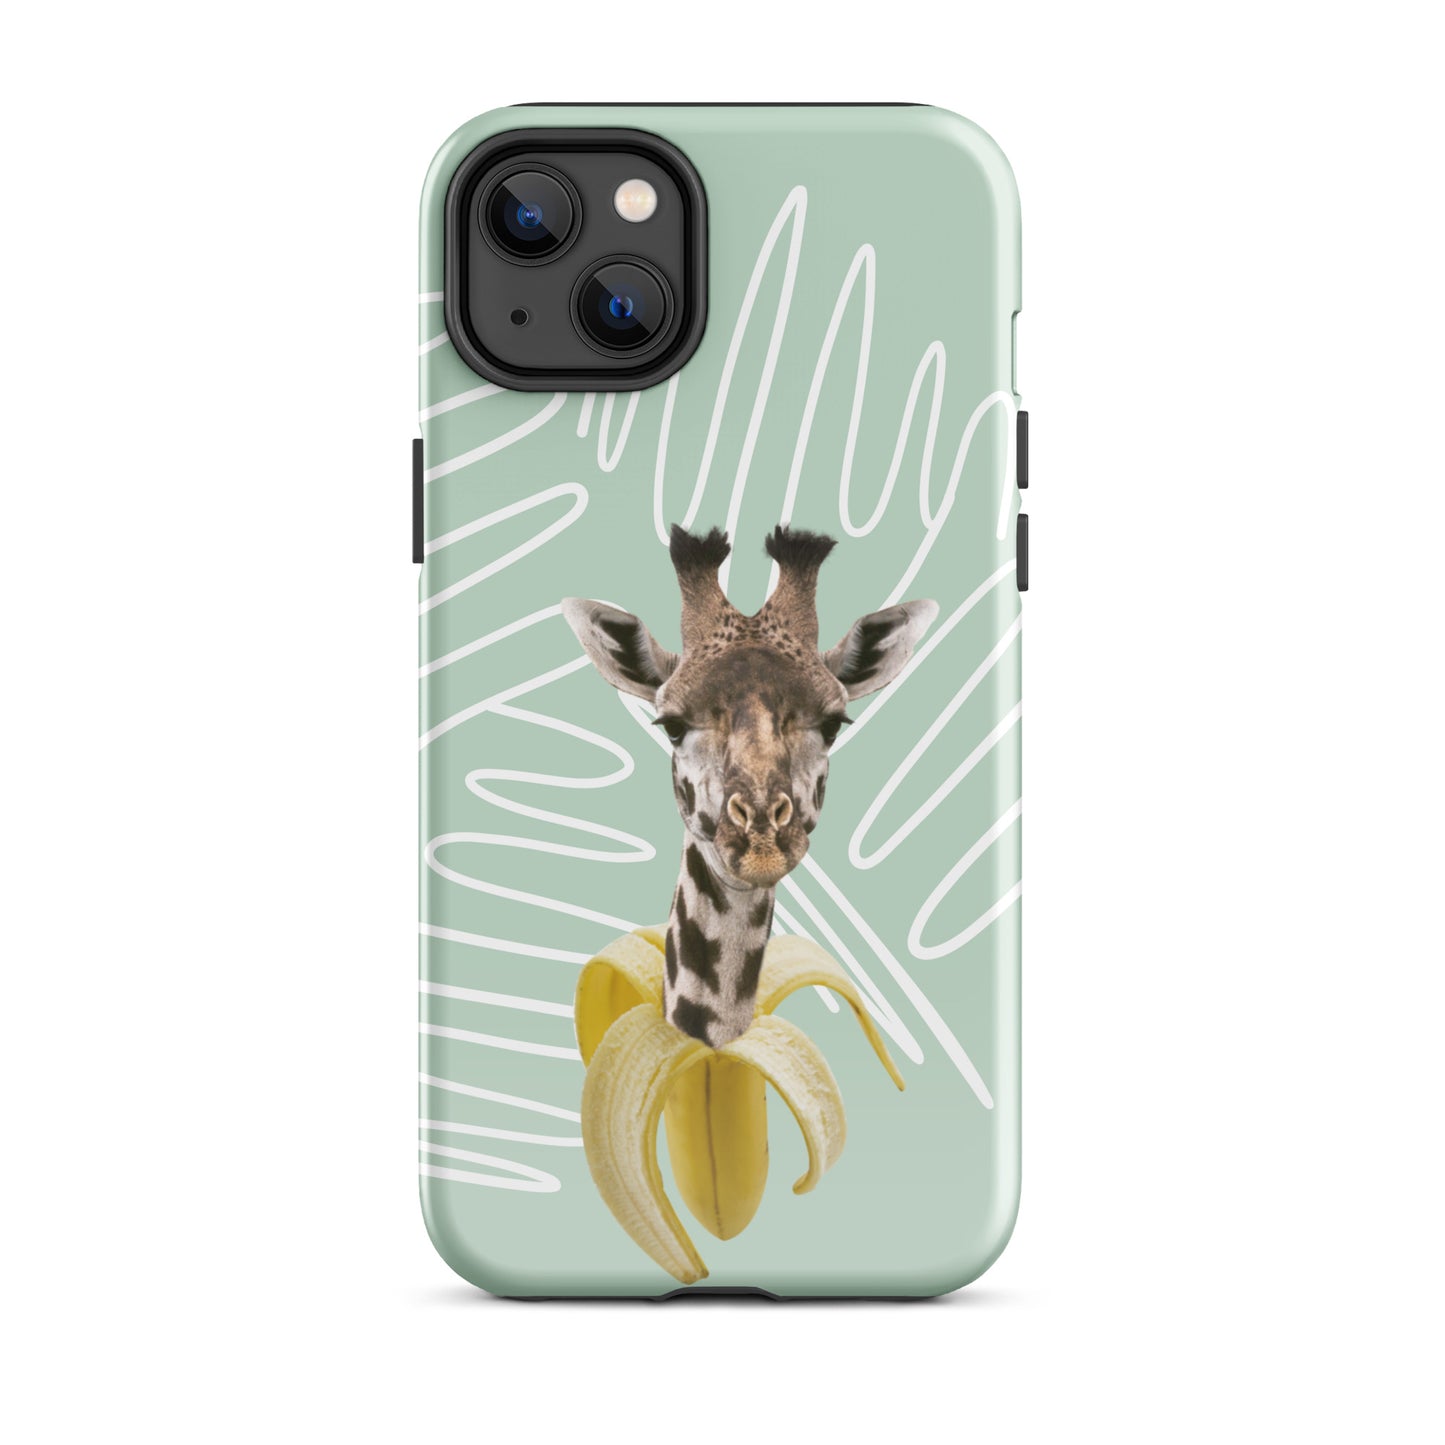 "Giraffe" iPhone® hard protective case